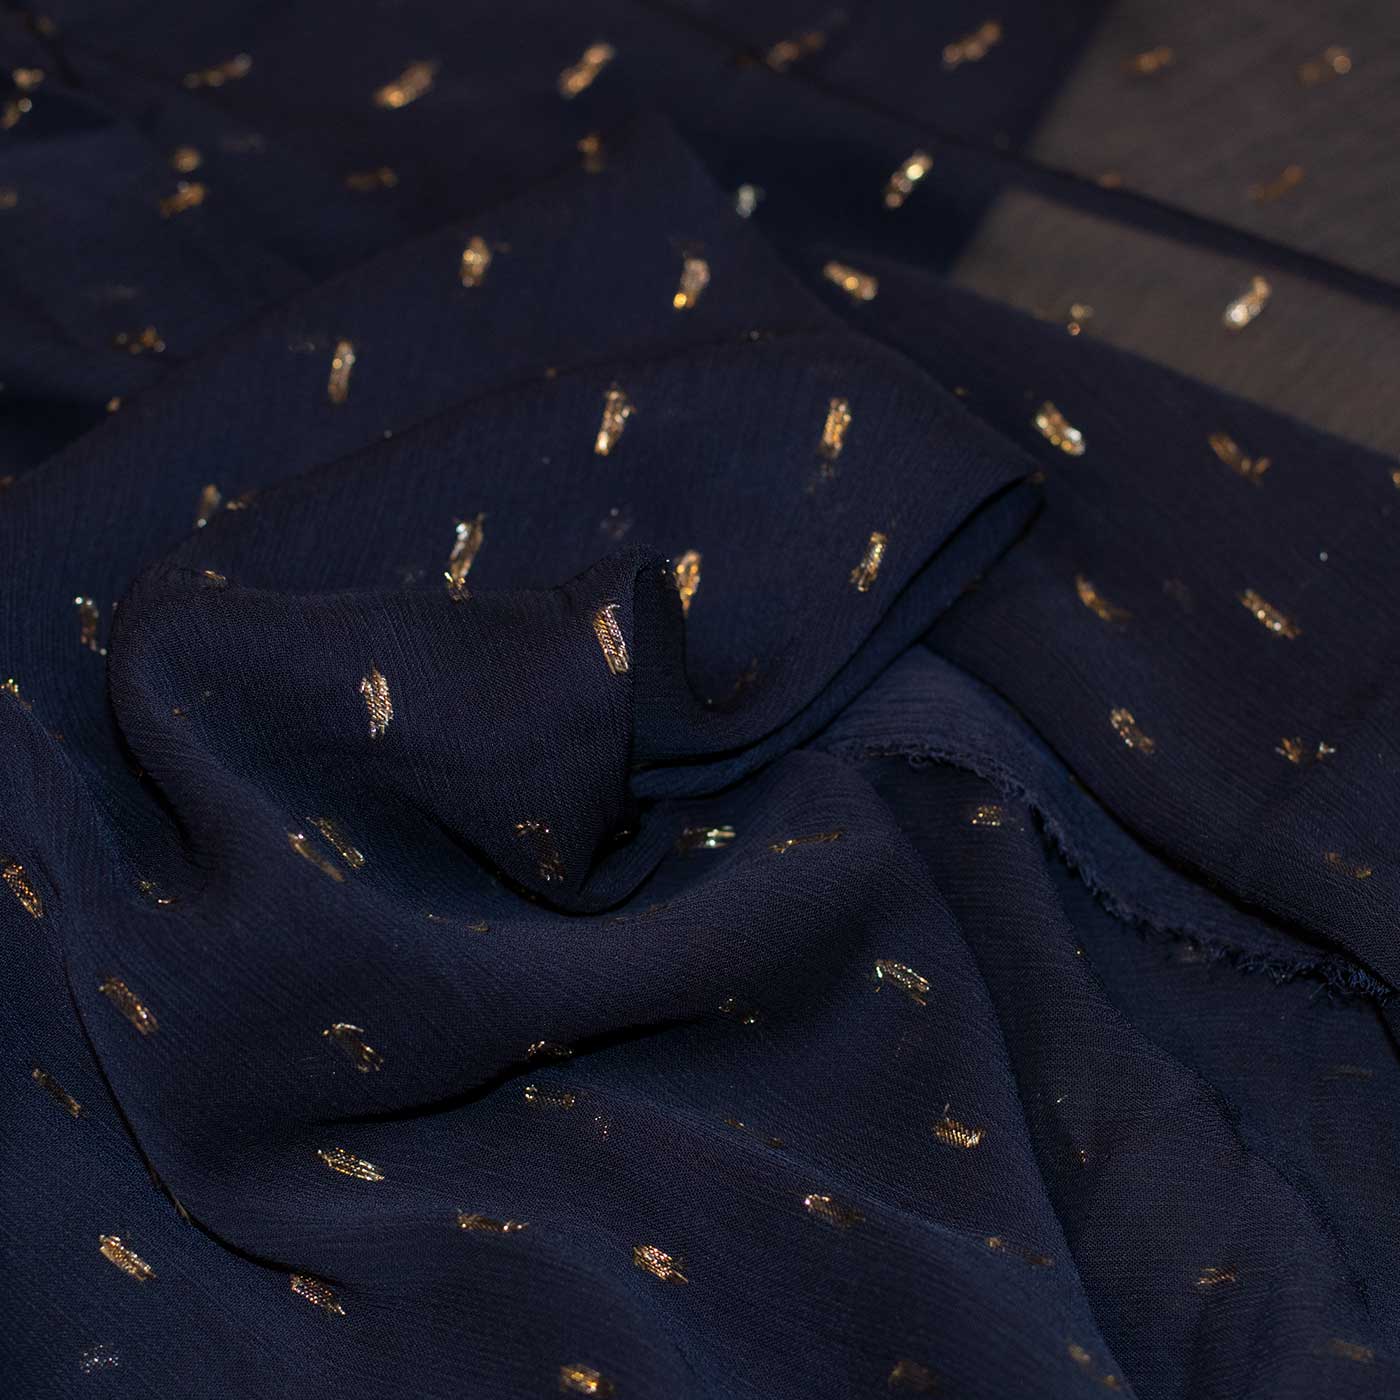 Blue and Gold Metallic Chiffon Fabric